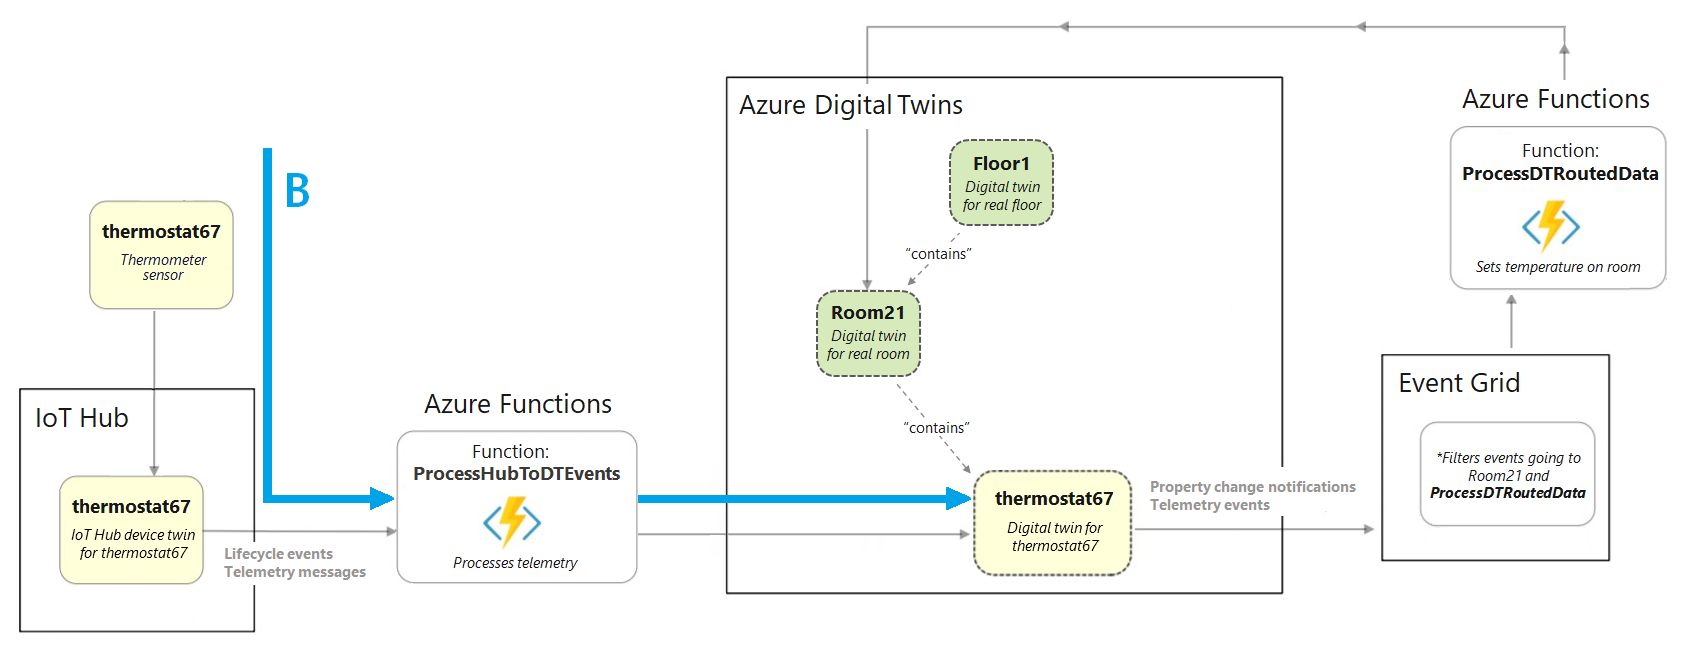 Diagrama de um excerto do diagrama completo do cenário de criação a realçar a secção que mostra elementos antes do Azure Digital Twins.